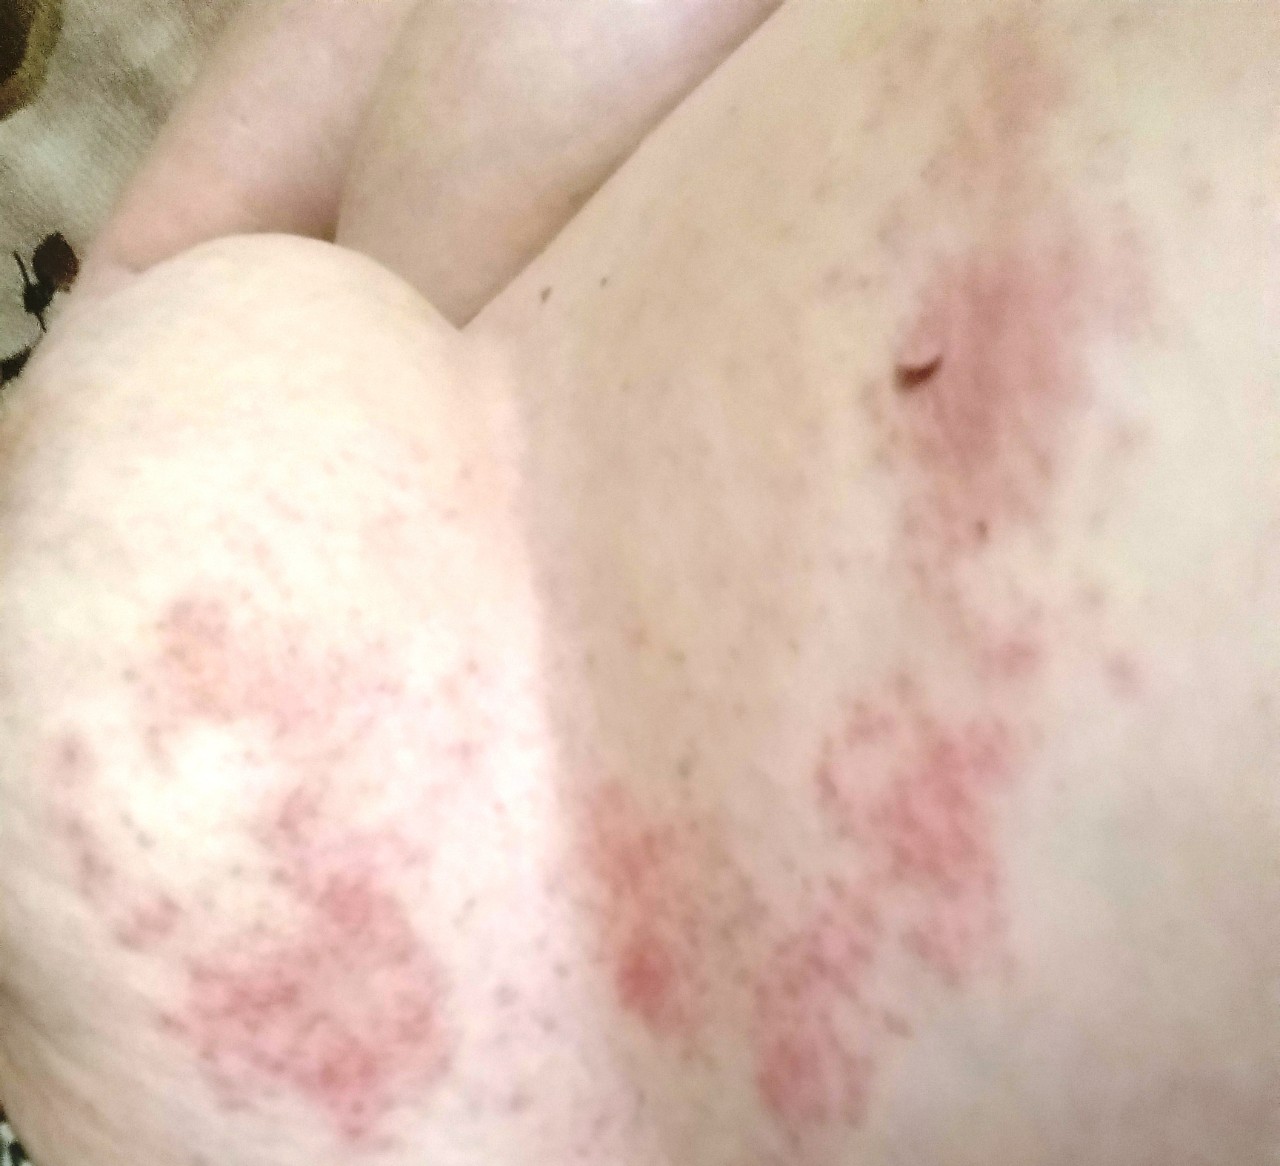 красные высыпания на груди у женщин фото 118